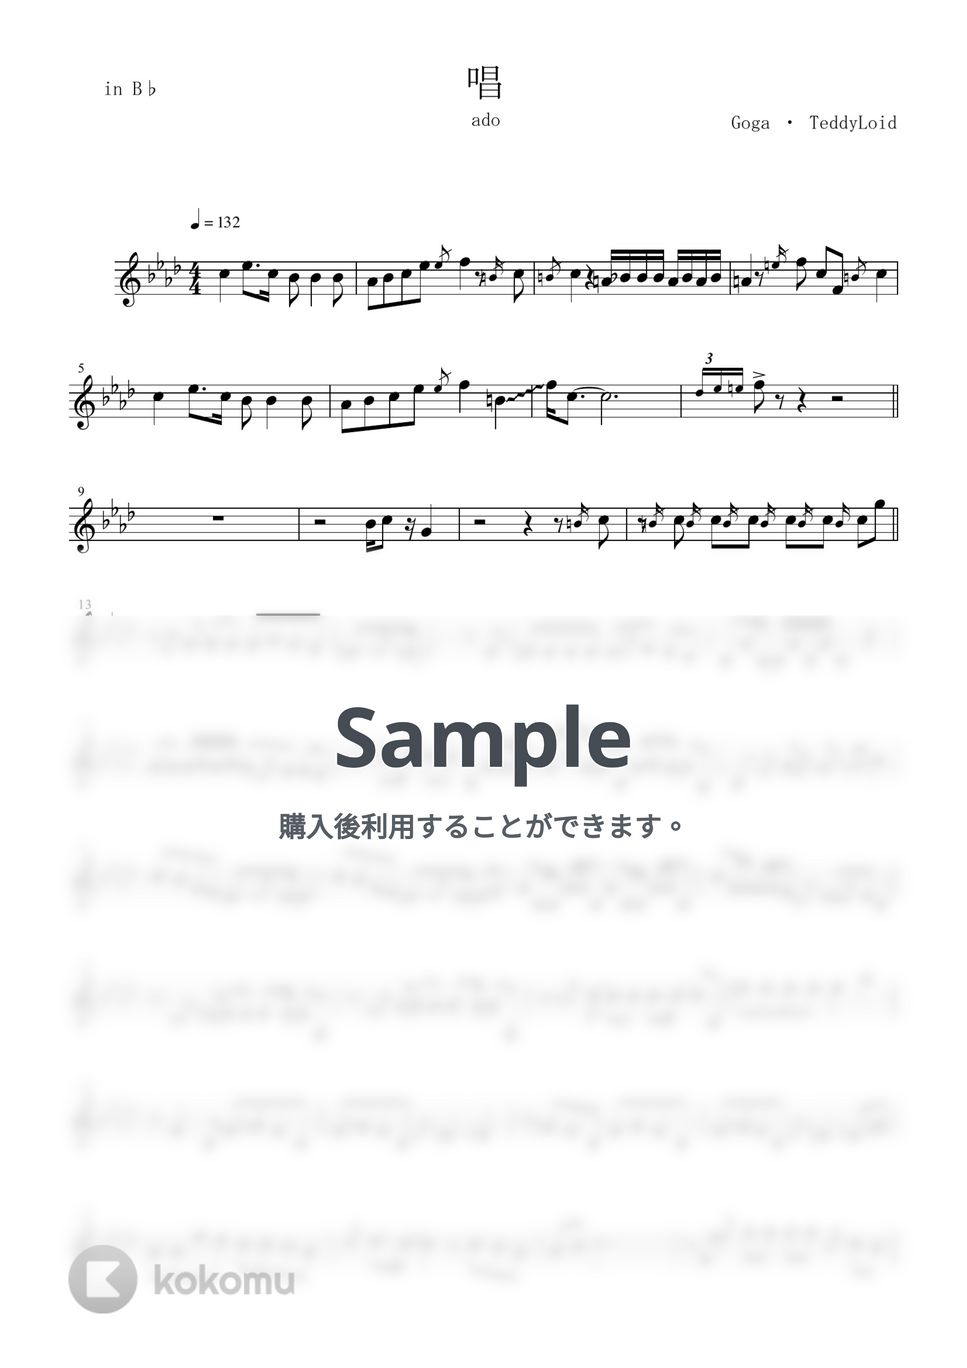 ado - 唱 (in B♭/ソロ/クラリネット/唱/ado/ゾンビデダンス/ユニバ/USJ) by enorisa